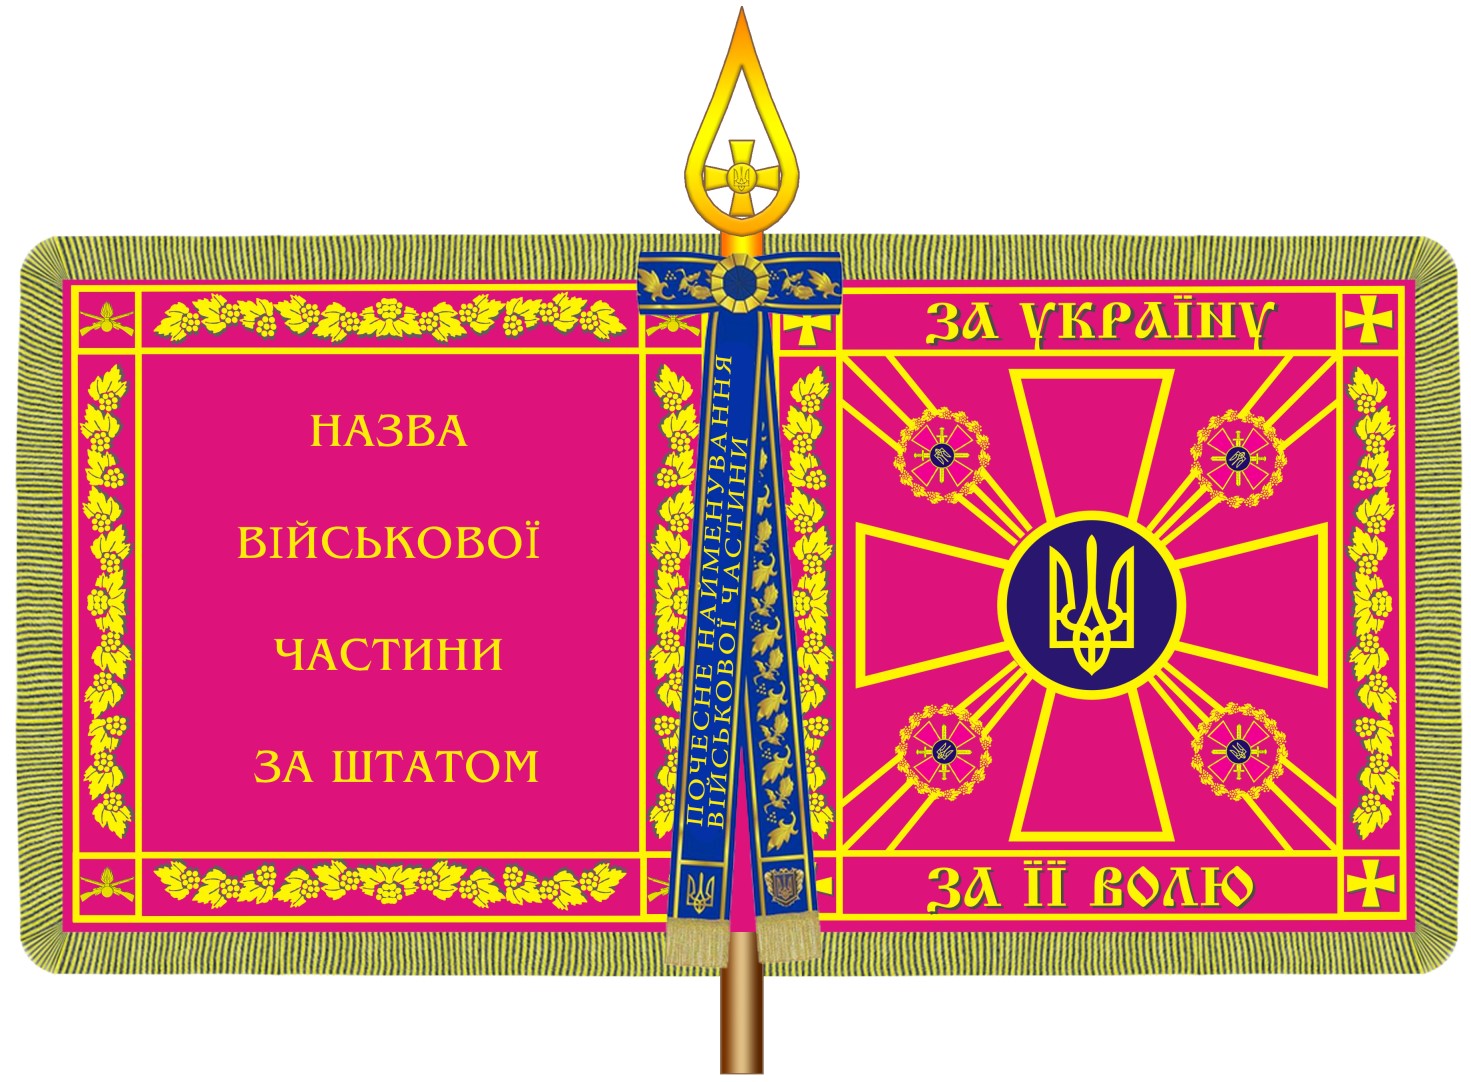 Украинские солдаты одержали новый боевой флаг в частях: Порошенко принял указ про модернизированное знамя ВСУ